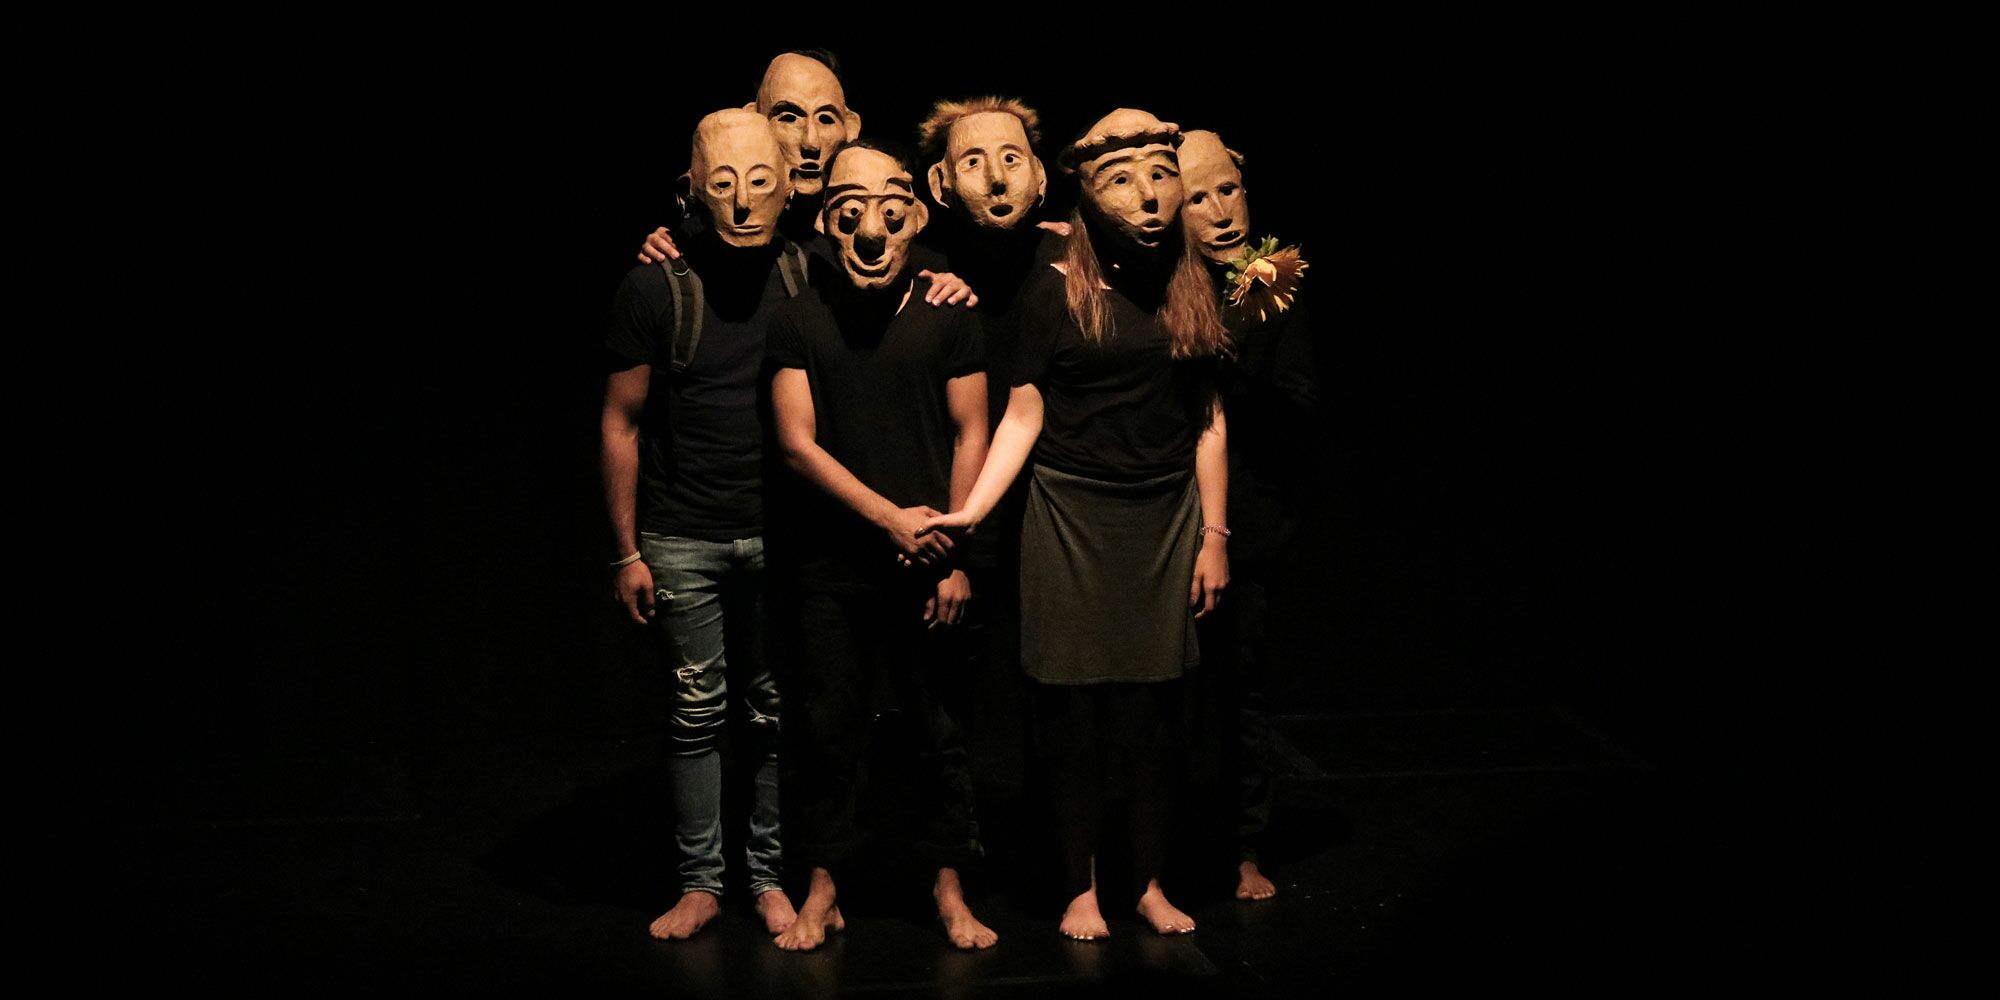 Hier sieht man Schauspielerinnen und Schauspieler mit Masken, die ihr komplettes Gesicht verdecken, in zwei Reihen dicht beieinander stehen. Sie sehen alle gerade nach vorne.